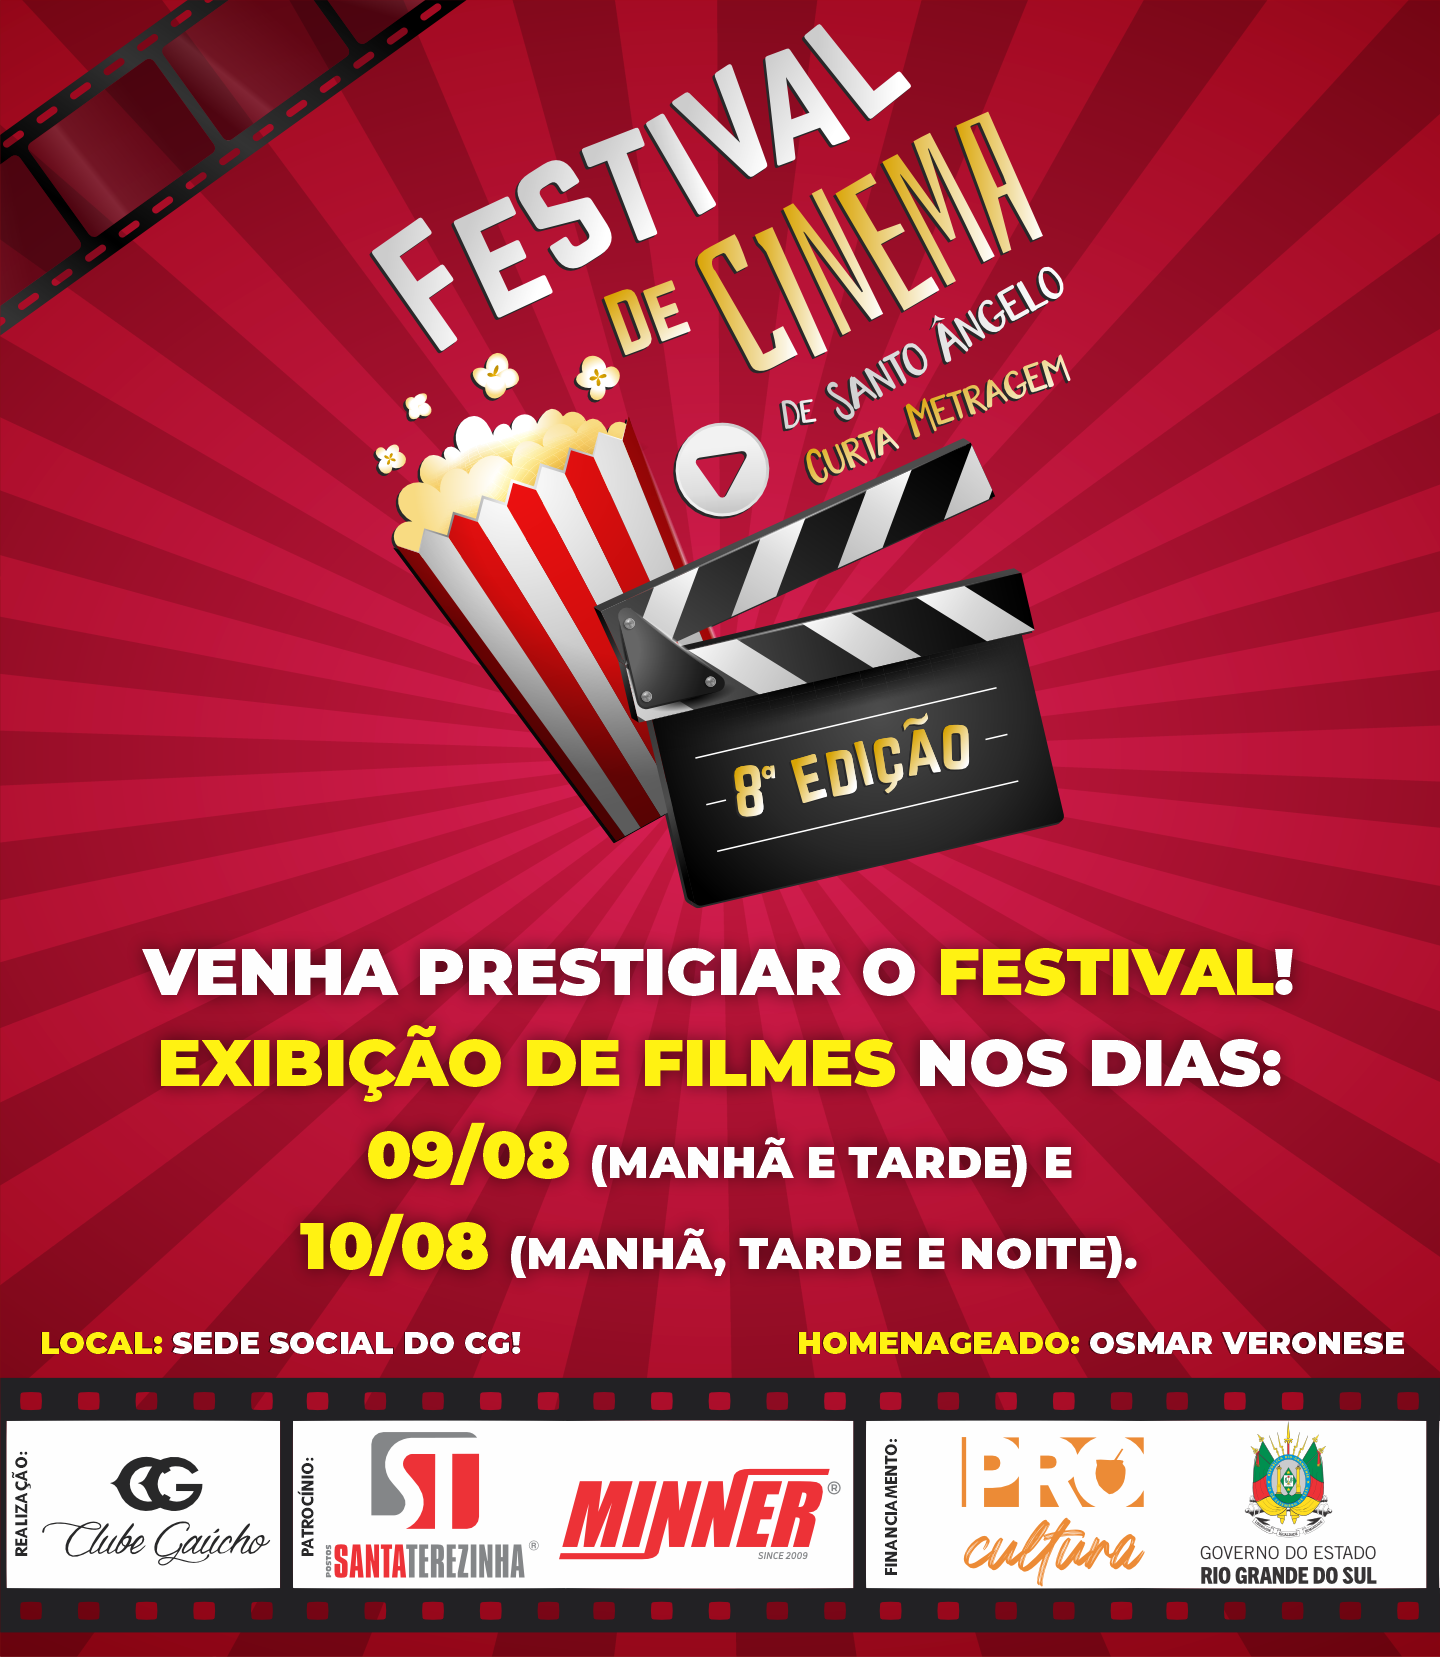 8º Festival de Cinema de Santo Ângelo Curta Metragem